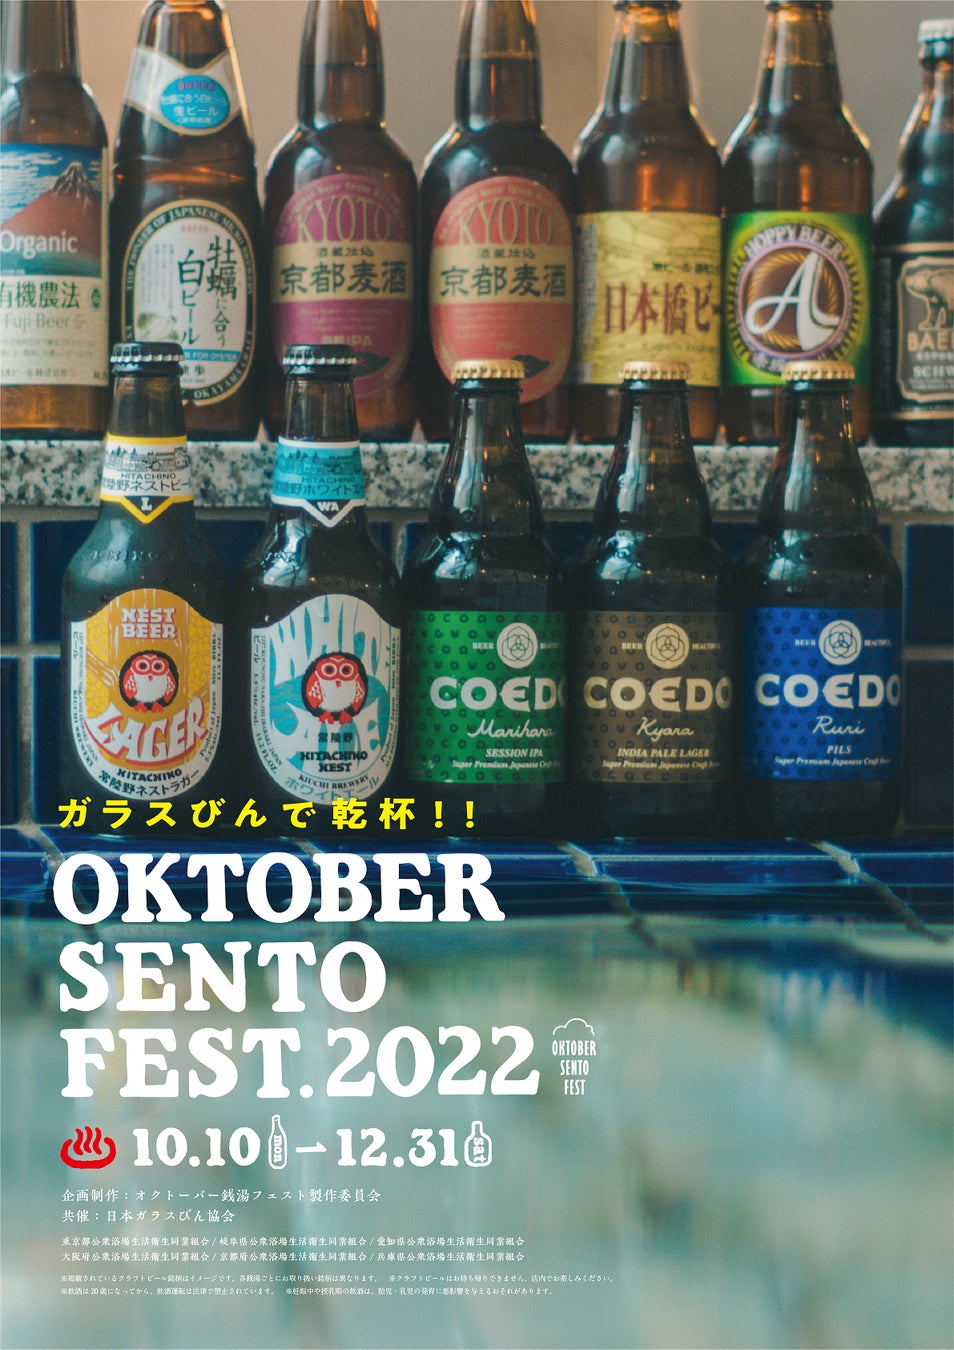 東京、岐阜、石川、愛知、京都、大阪、兵庫の銭湯にガラスびん入り国産クラフトビールが大集合！「OKTOBER SENTO FEST 2022」開催のサブ画像7